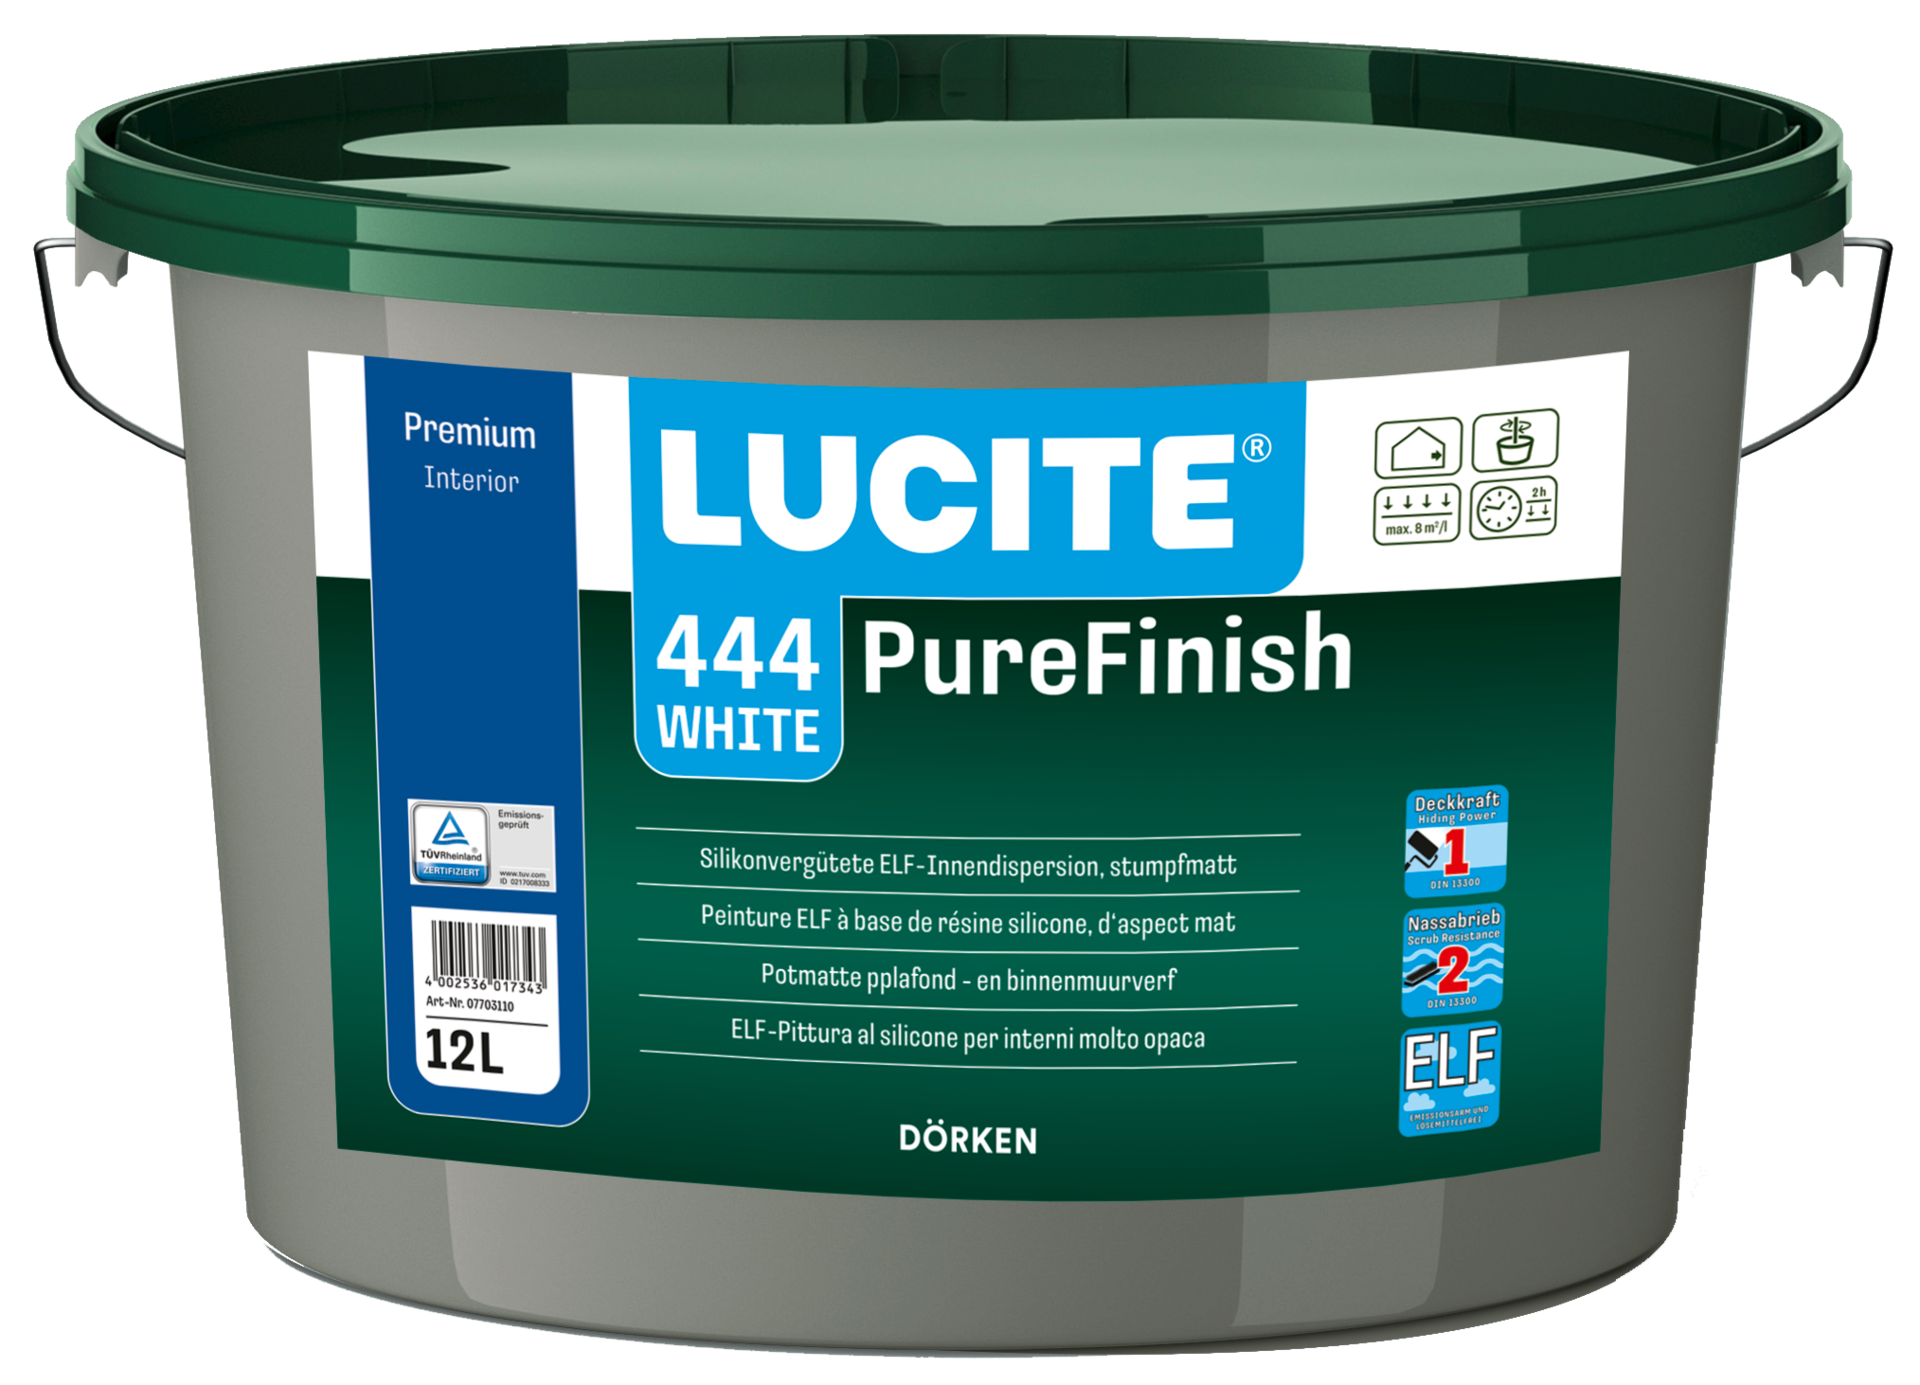 LUCITE® 444 PureFinish